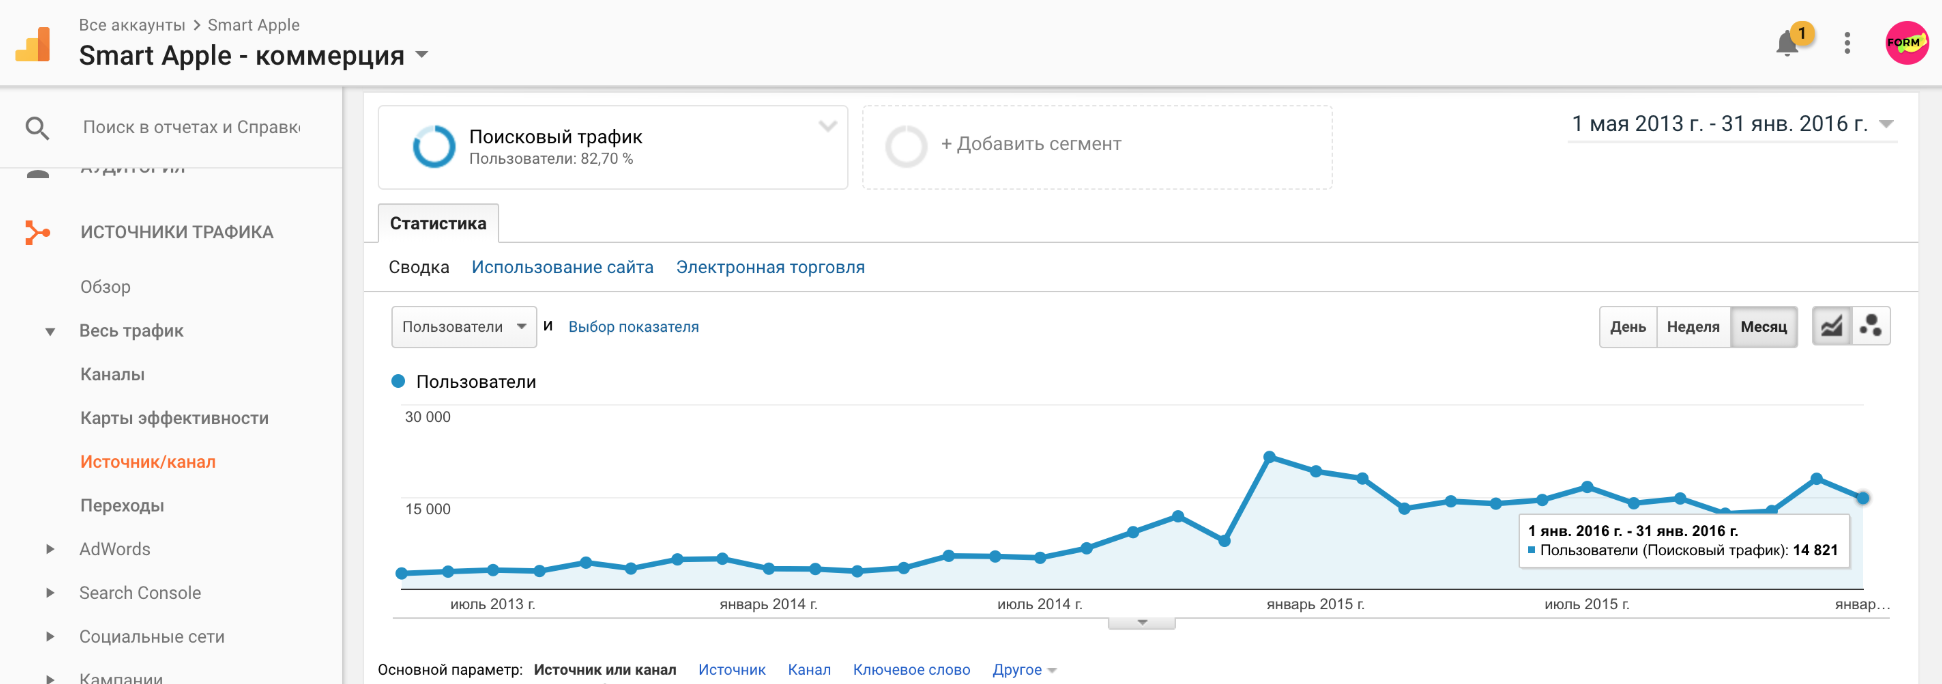 Тенденция поискового трафика. В среднем, в месяц на сайт приходит 15 000 посетителей из Яндекса и Гугла